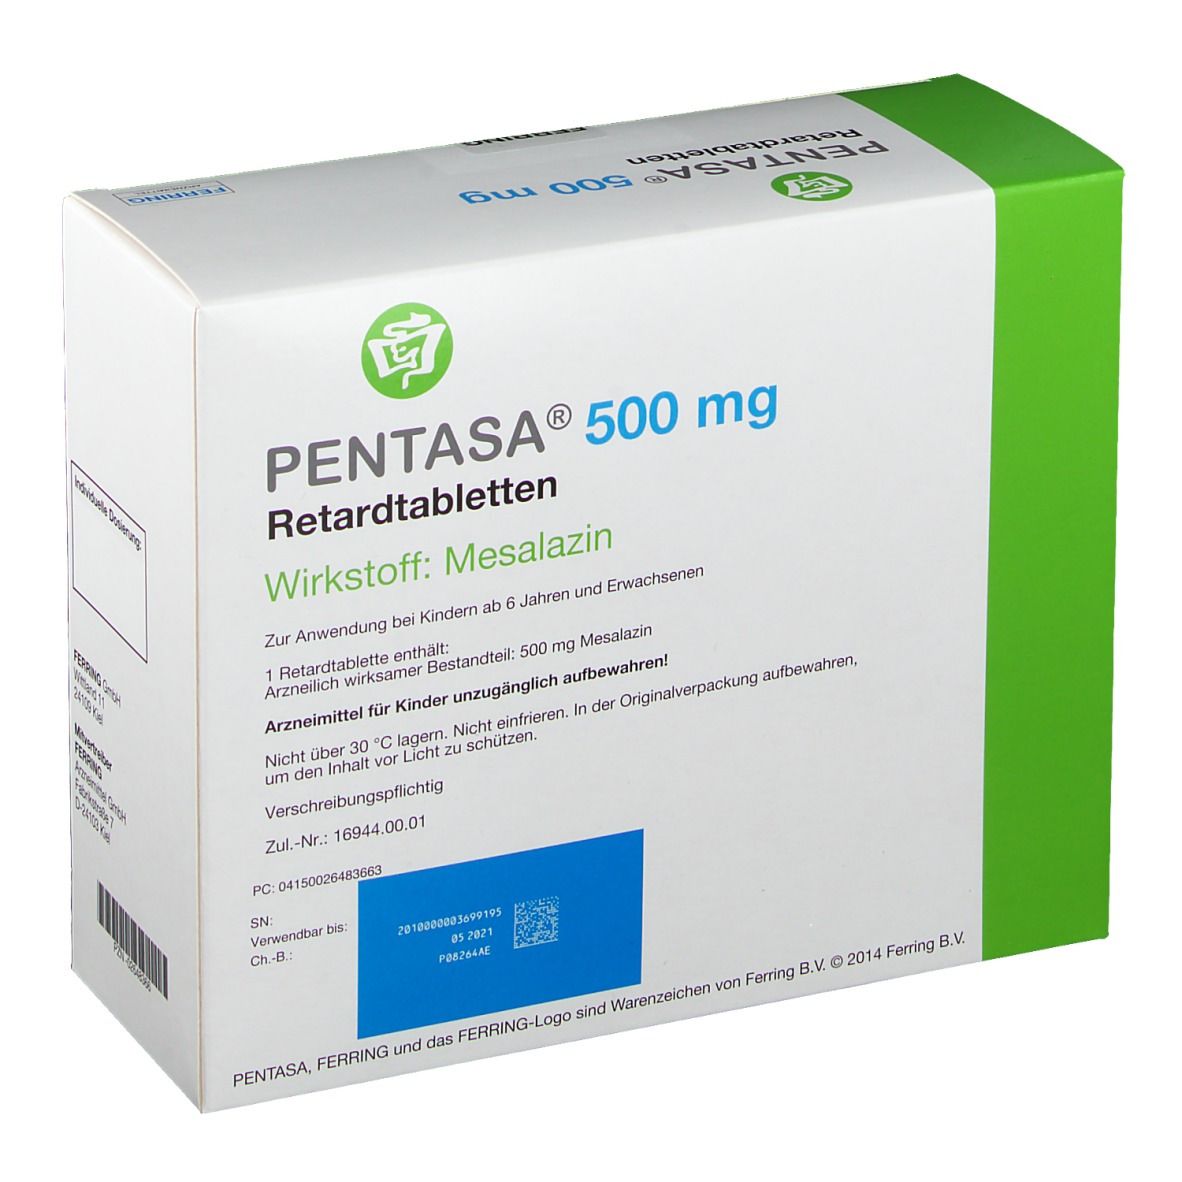 PENTASA® 500 mg